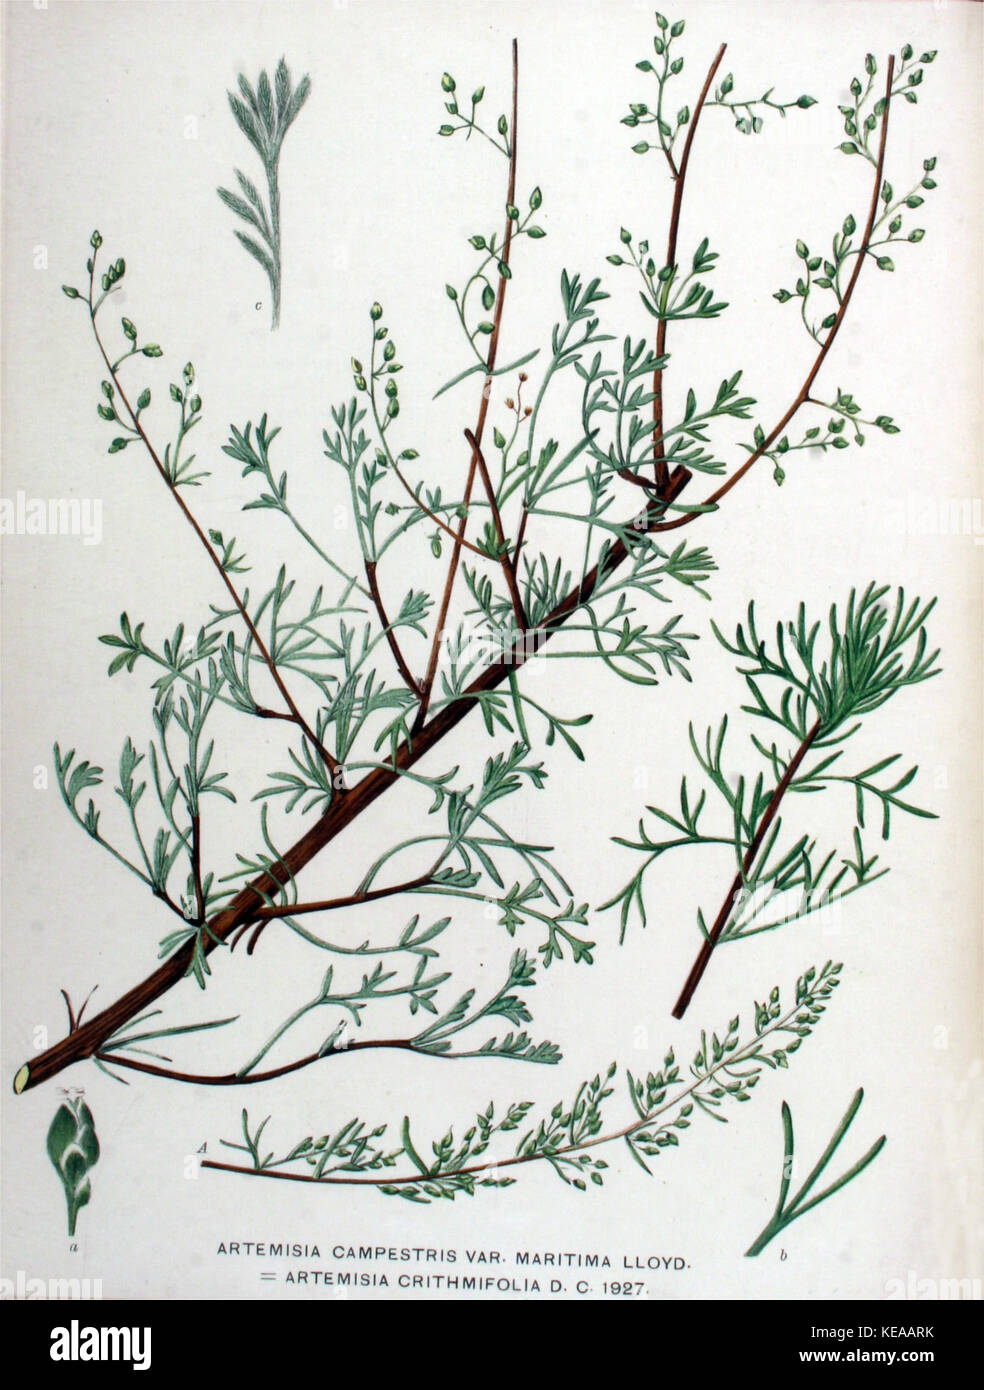 Artemisia campestris subsp. maritima (1a) Stock Photo